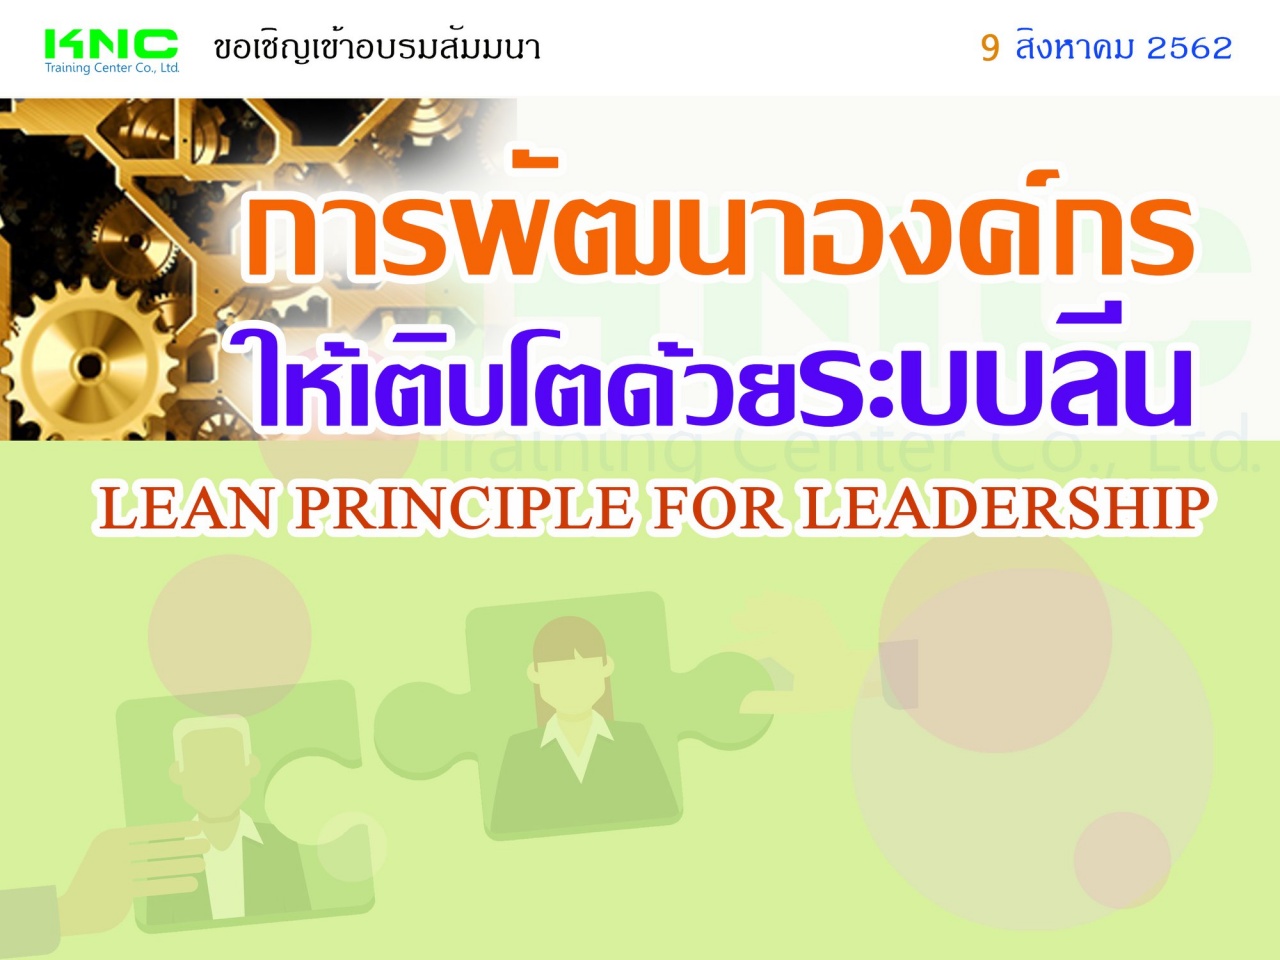 การพัฒนาองค์กรให้เติบโตด้วยระบบลีน (LEAN PRINCIPLE FOR LEADERSHIP)